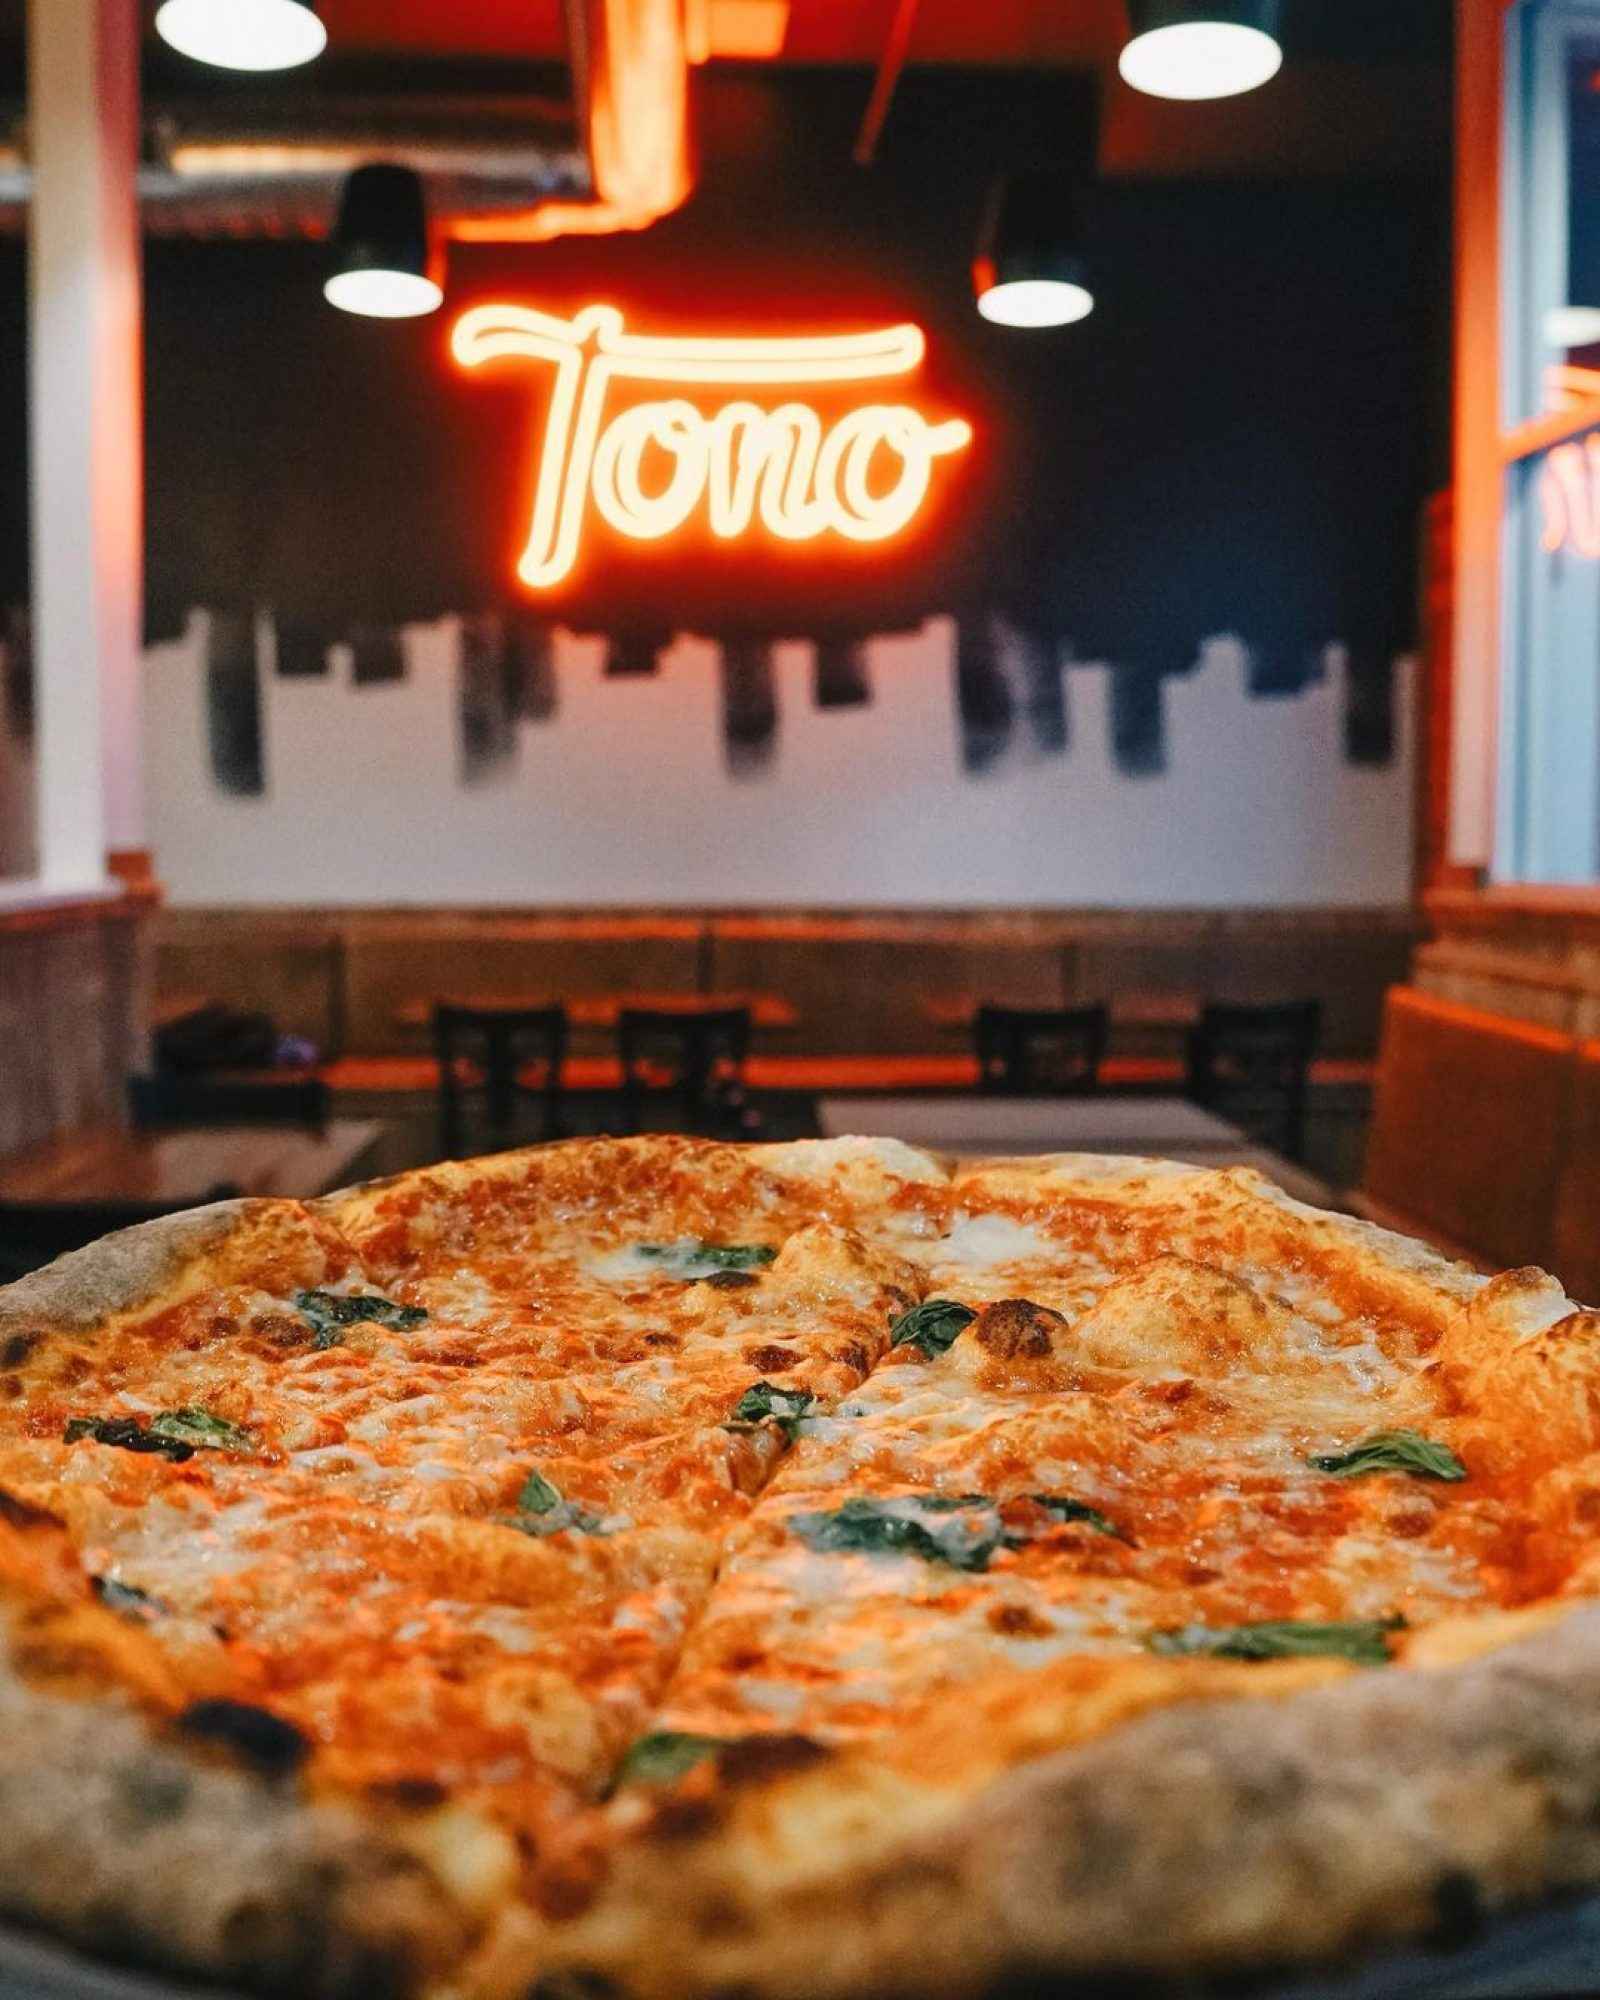 Tono margherita pizza in a Tono restaurant